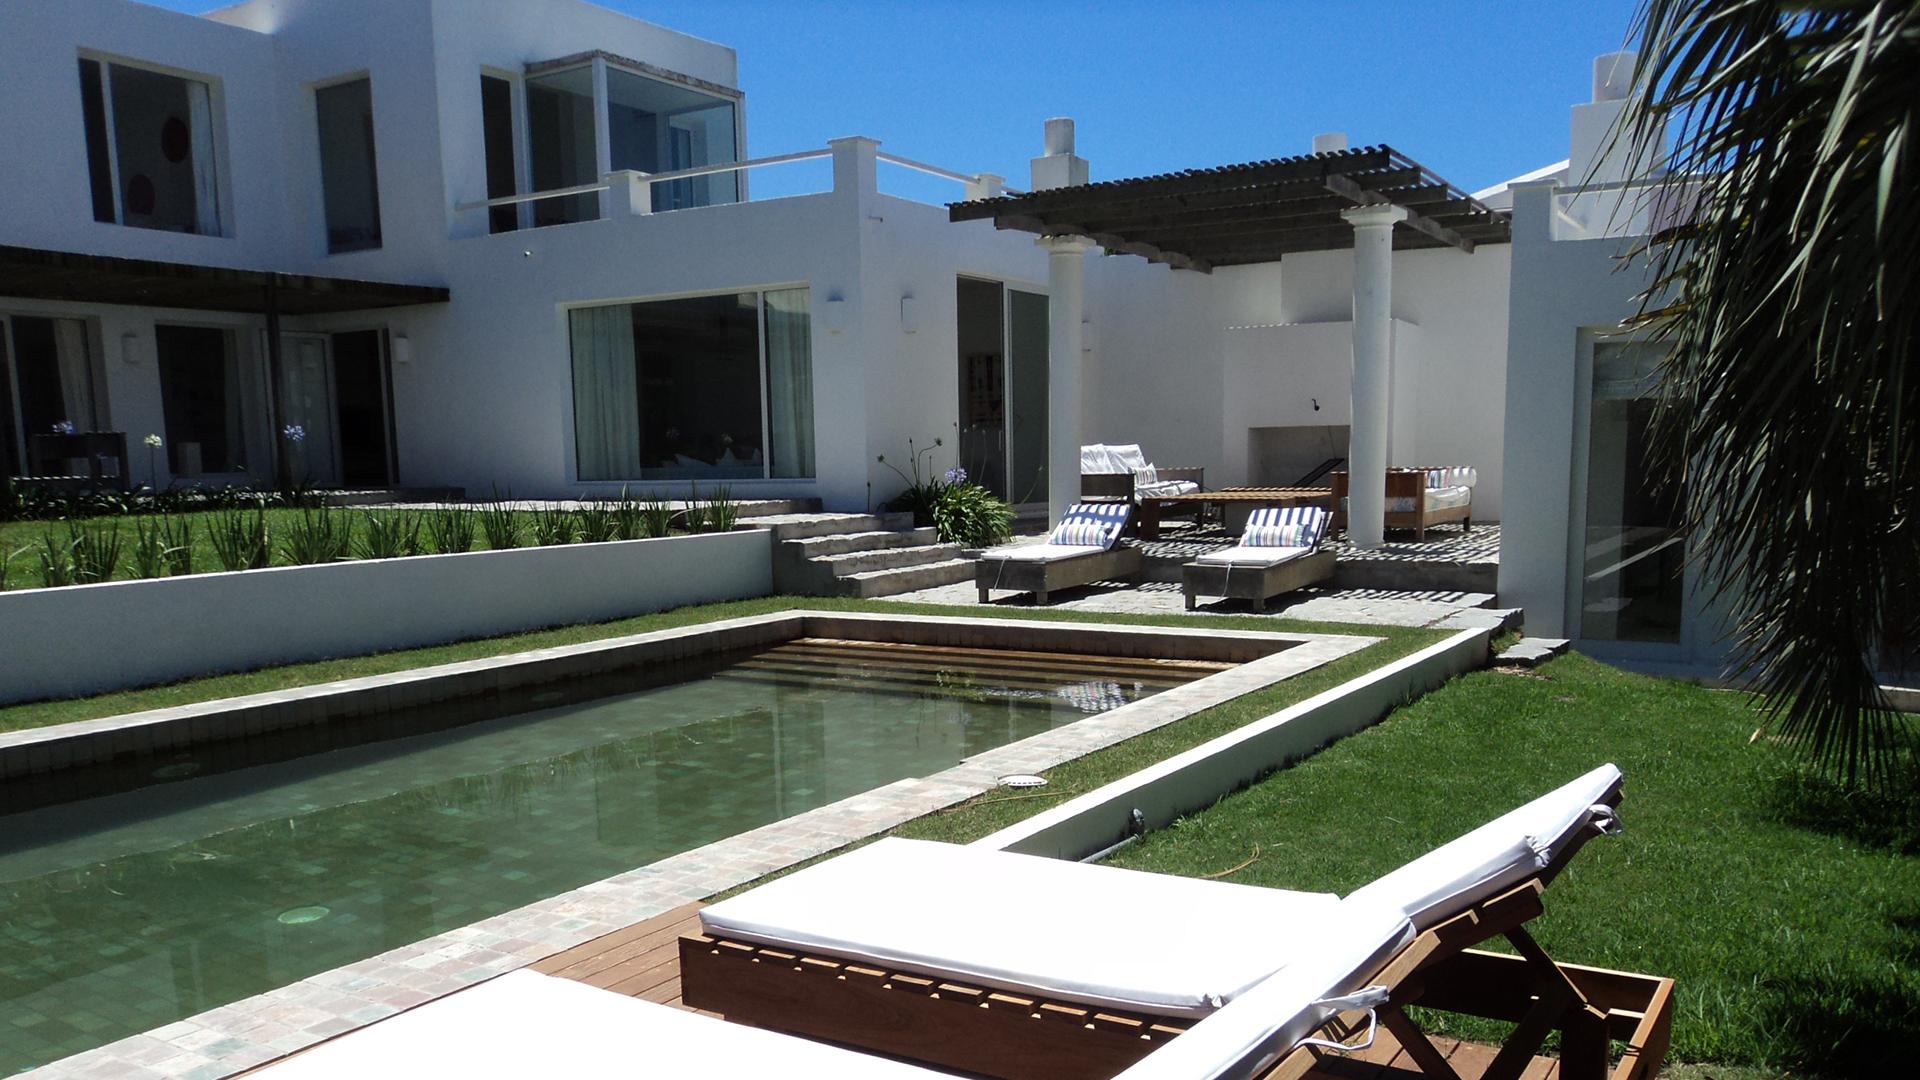 Charming Ocean View Villa  located in La Barra, Punta del Este, Uruguay, listed by Curiocity Villas.